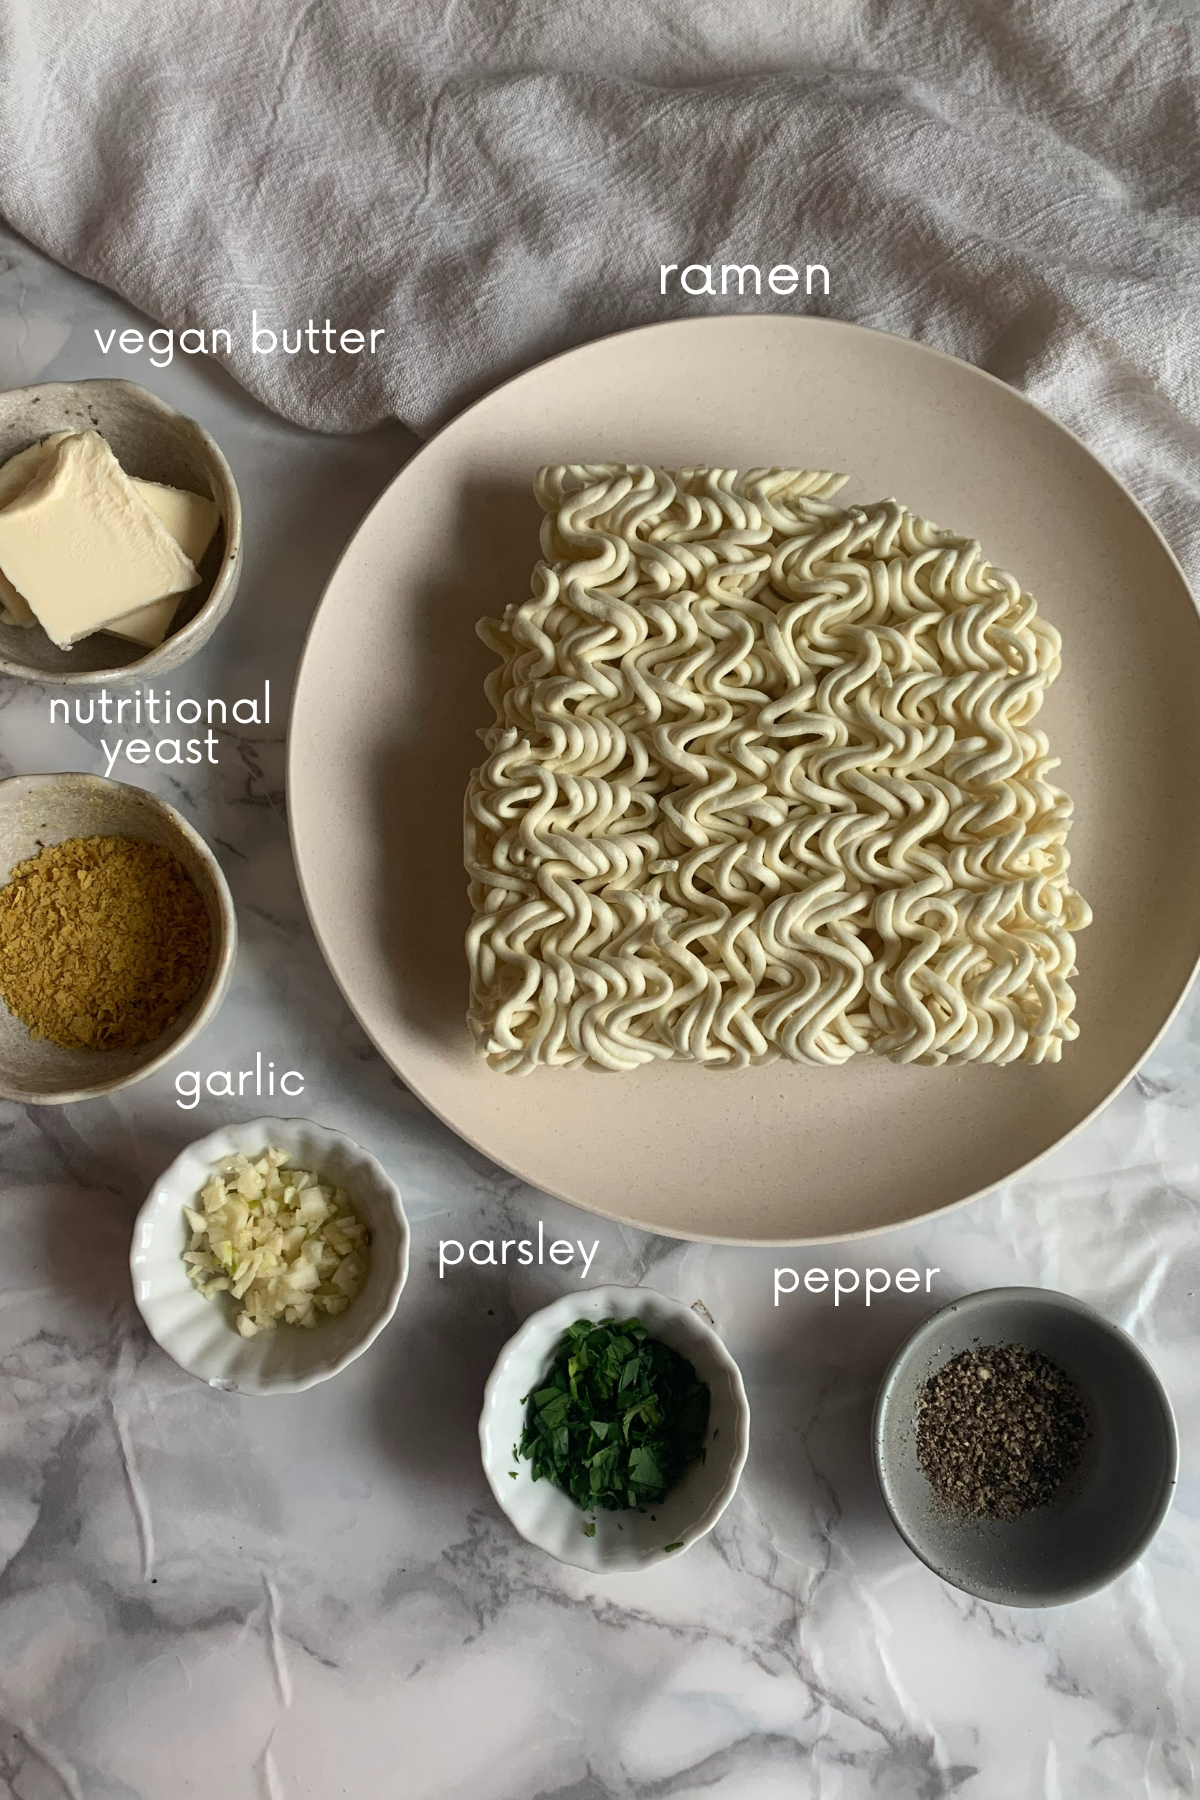 Ingredients for vegan buttered noodles.